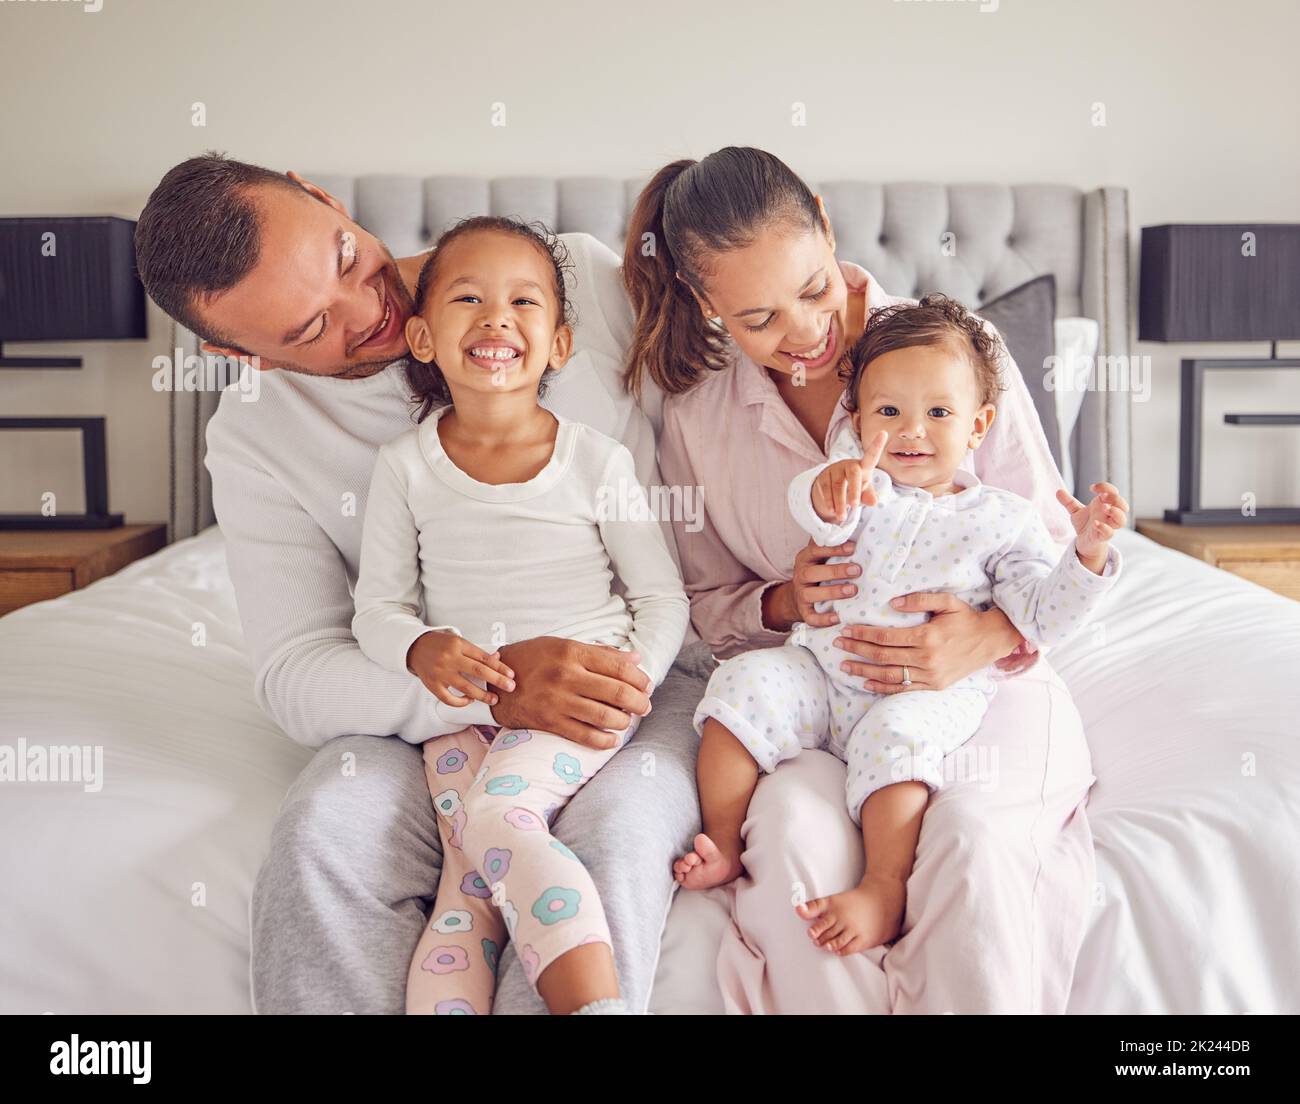 Glücklich, lächelnd und eine Familie im Schlafanzug auf dem Bett mit kleinen Mädchen. Junge Mutter und Vater mit Mädchen Kinder im Schlafzimmer am Morgen. Liebe, Lächeln und Stockfoto